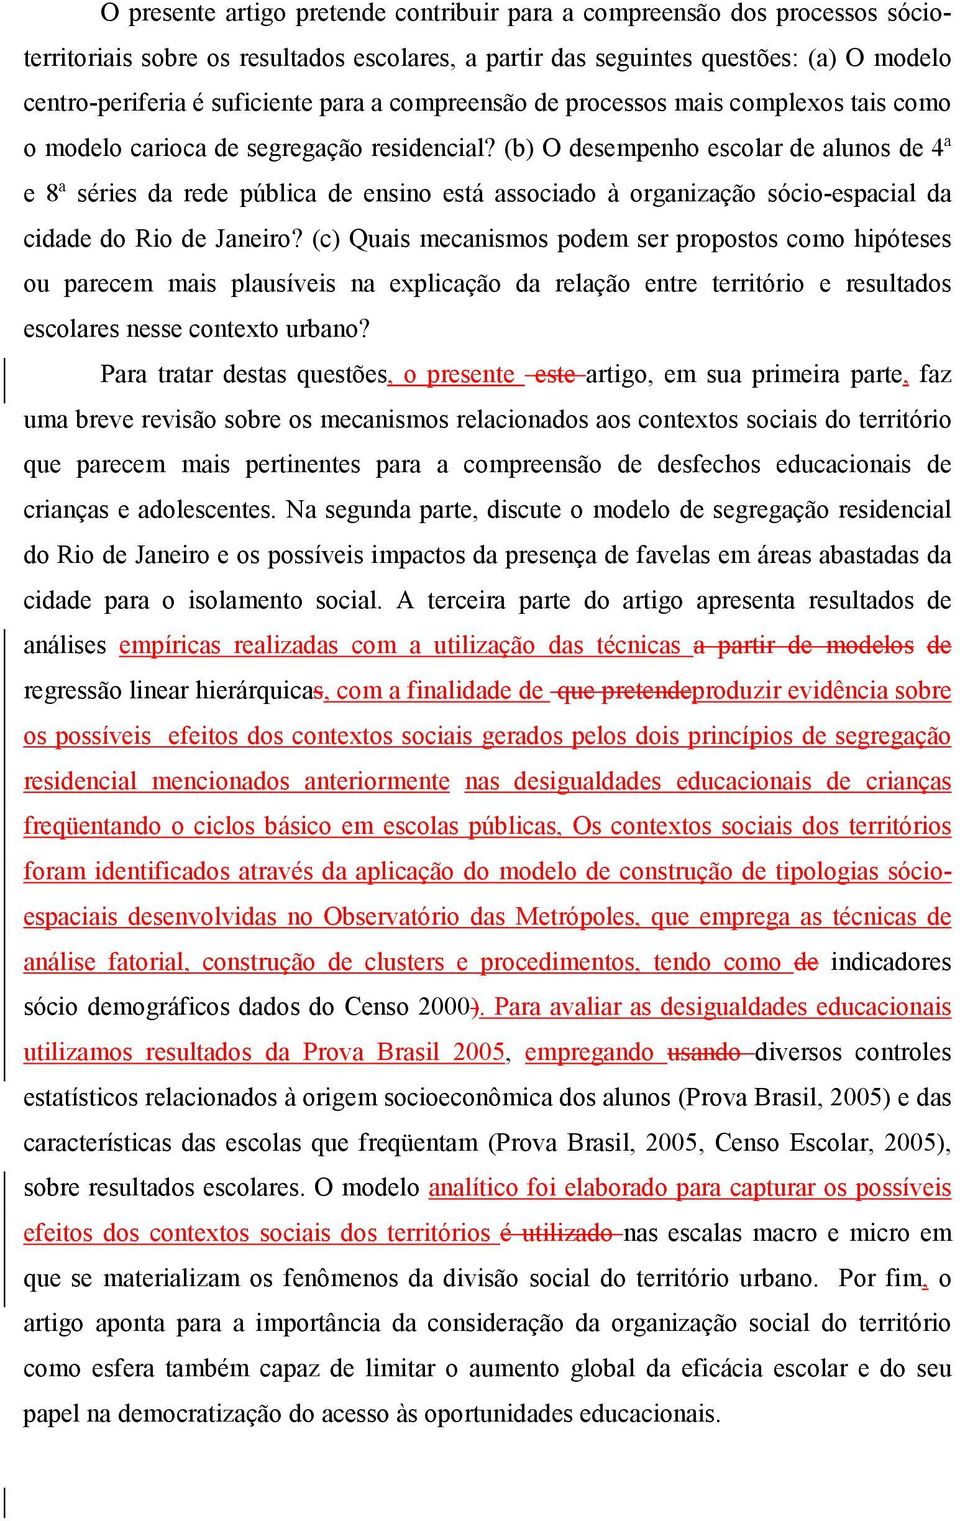 (b) O desempenho escolar de alunos de 4ª e 8ª séries da rede pública de ensino está associado à organização sócio-espacial da cidade do Rio de Janeiro?